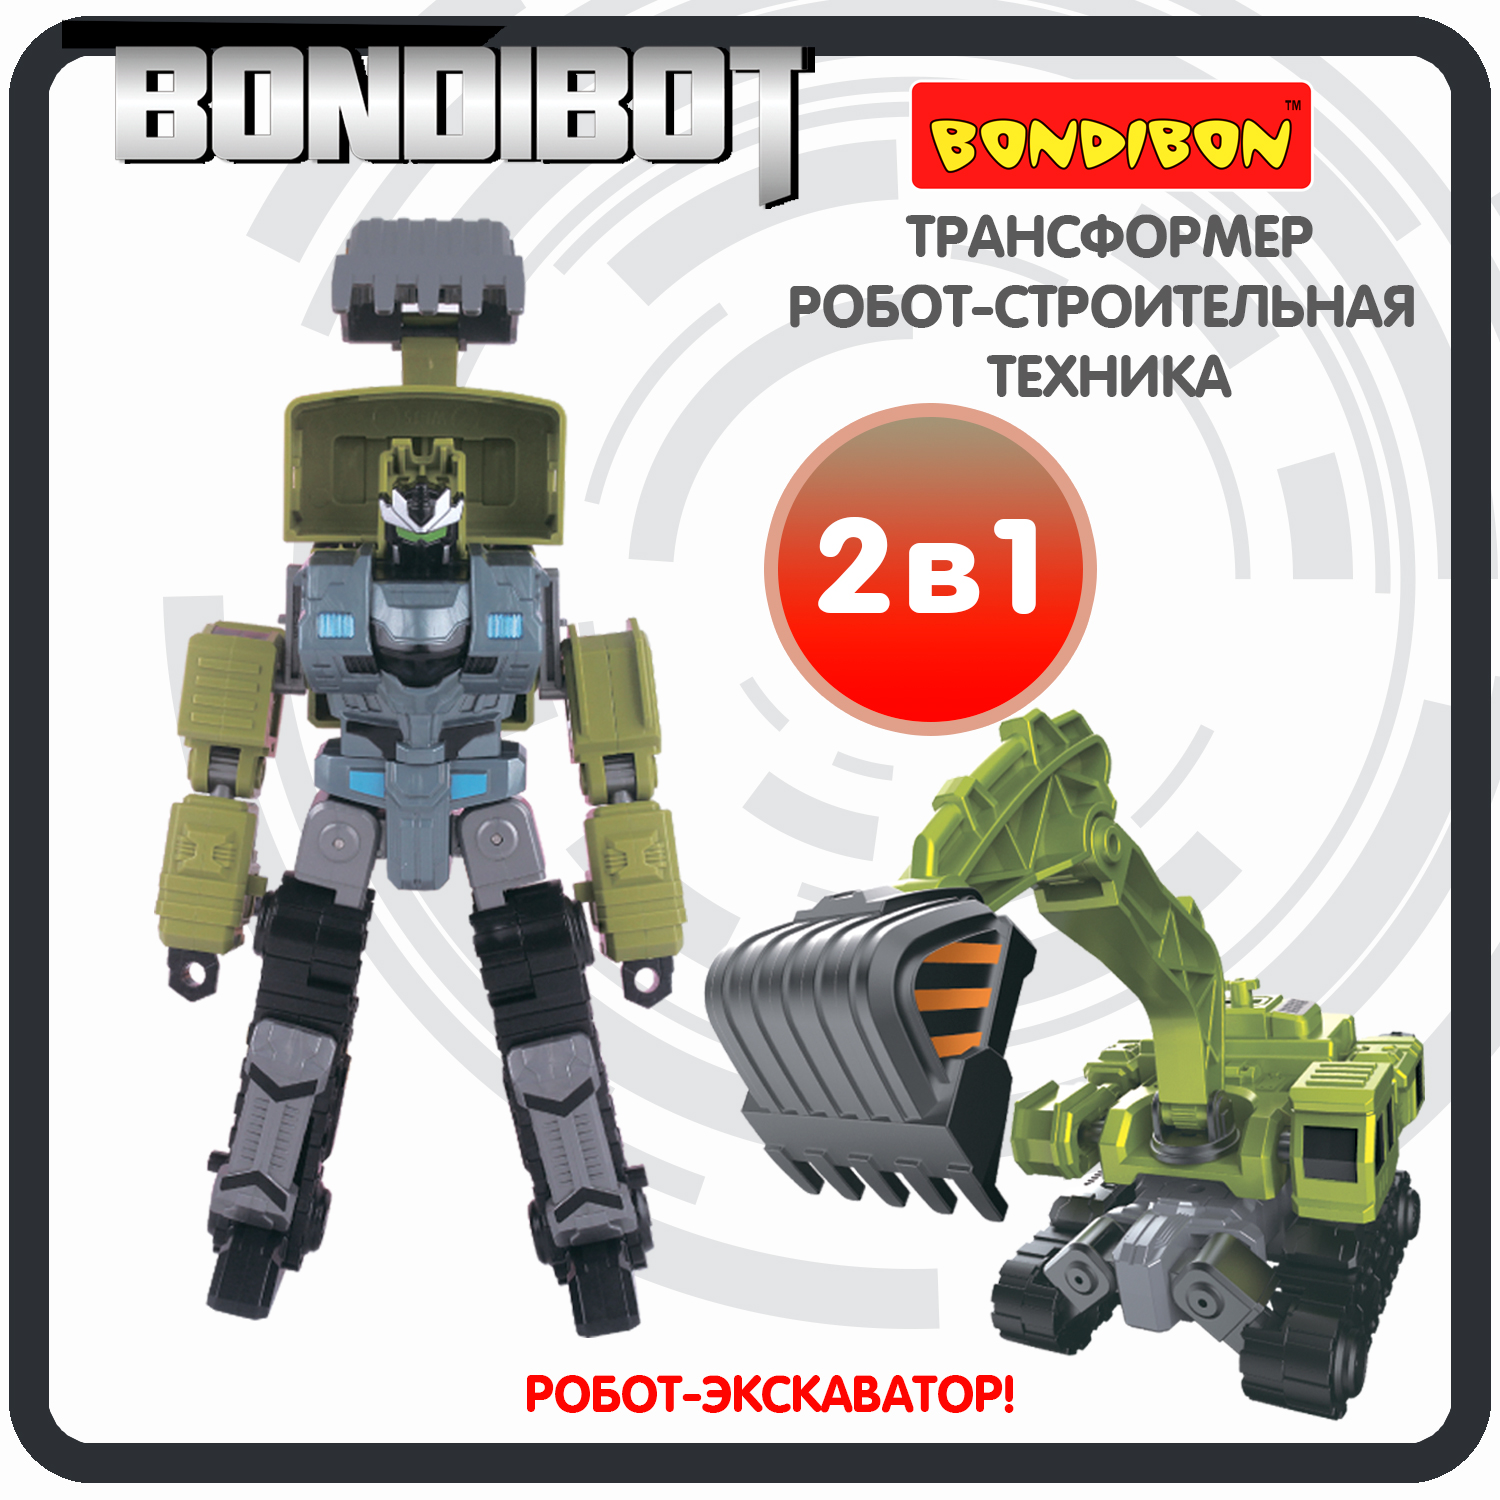 Трансформер робот-строительная техника, 2в1 BONDIBOT Bondibon, экскаватор / ВВ6054 bondibon трансформер bondibot робот экскаватор c ковшом 2 в 1